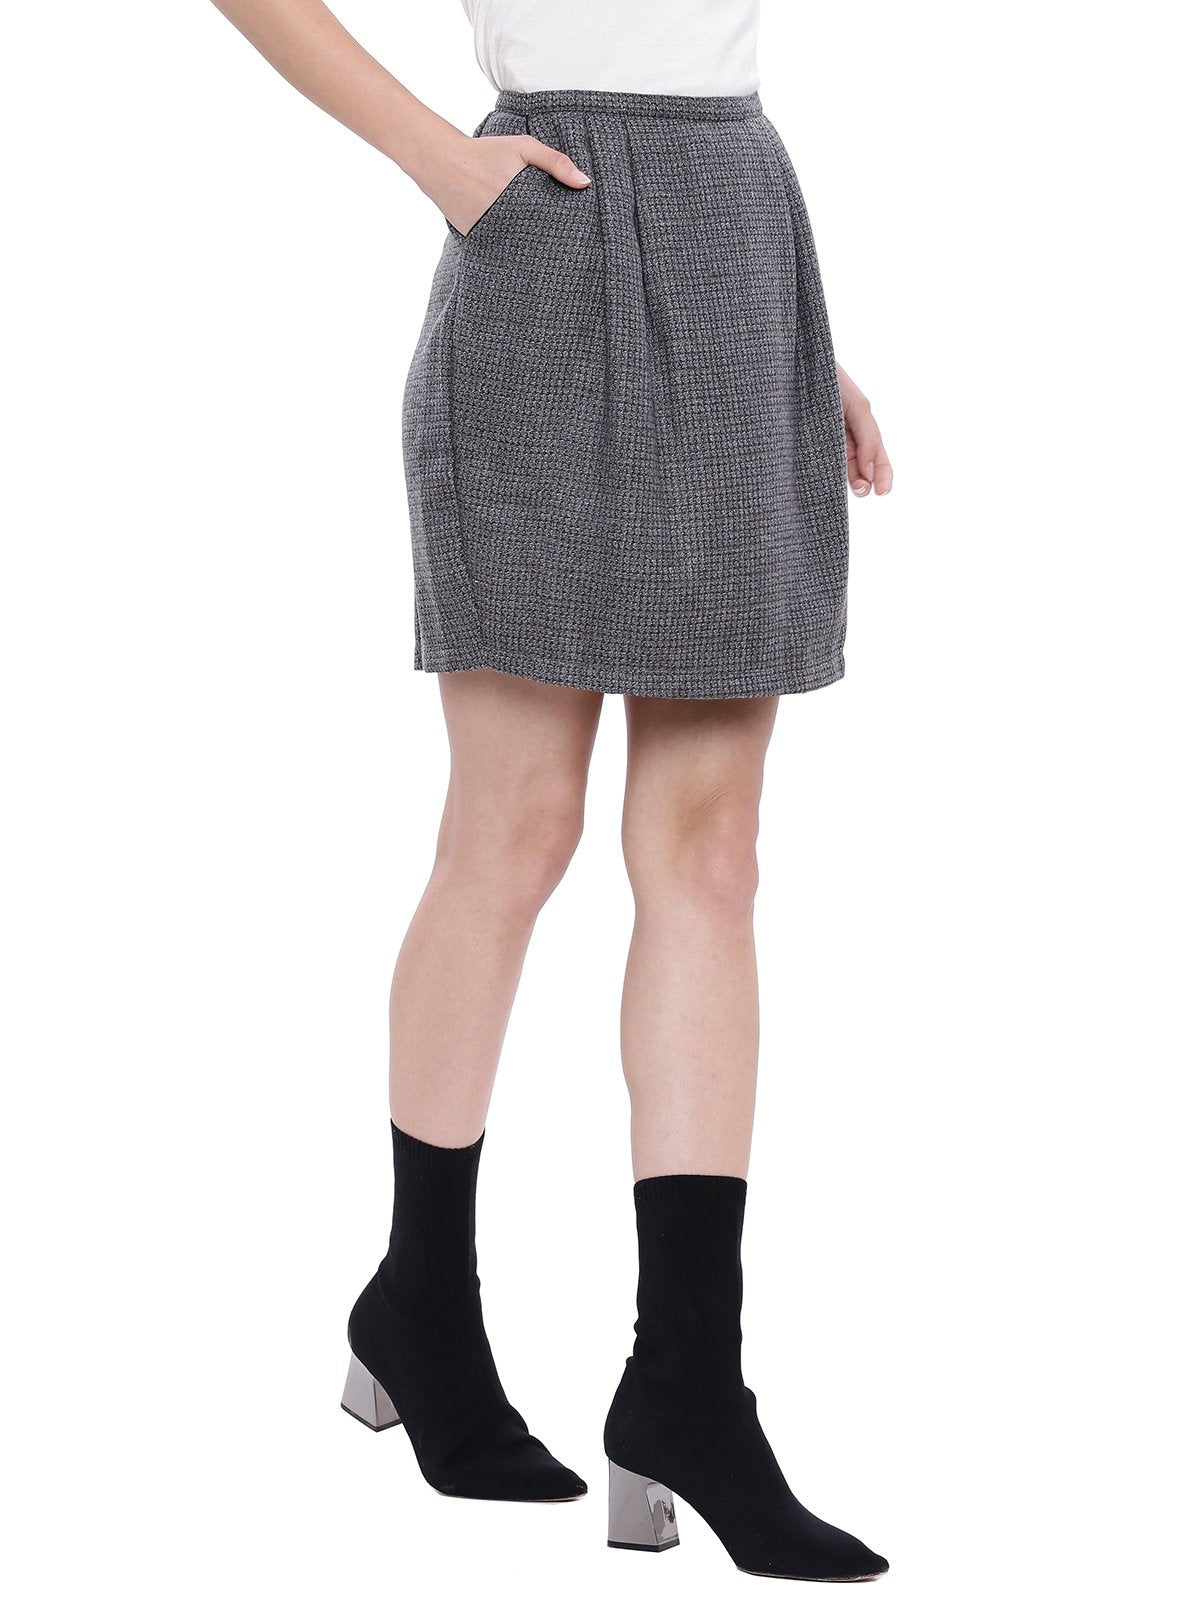 U.S. POLO ASSN. Cotton Blend Skirt Grey